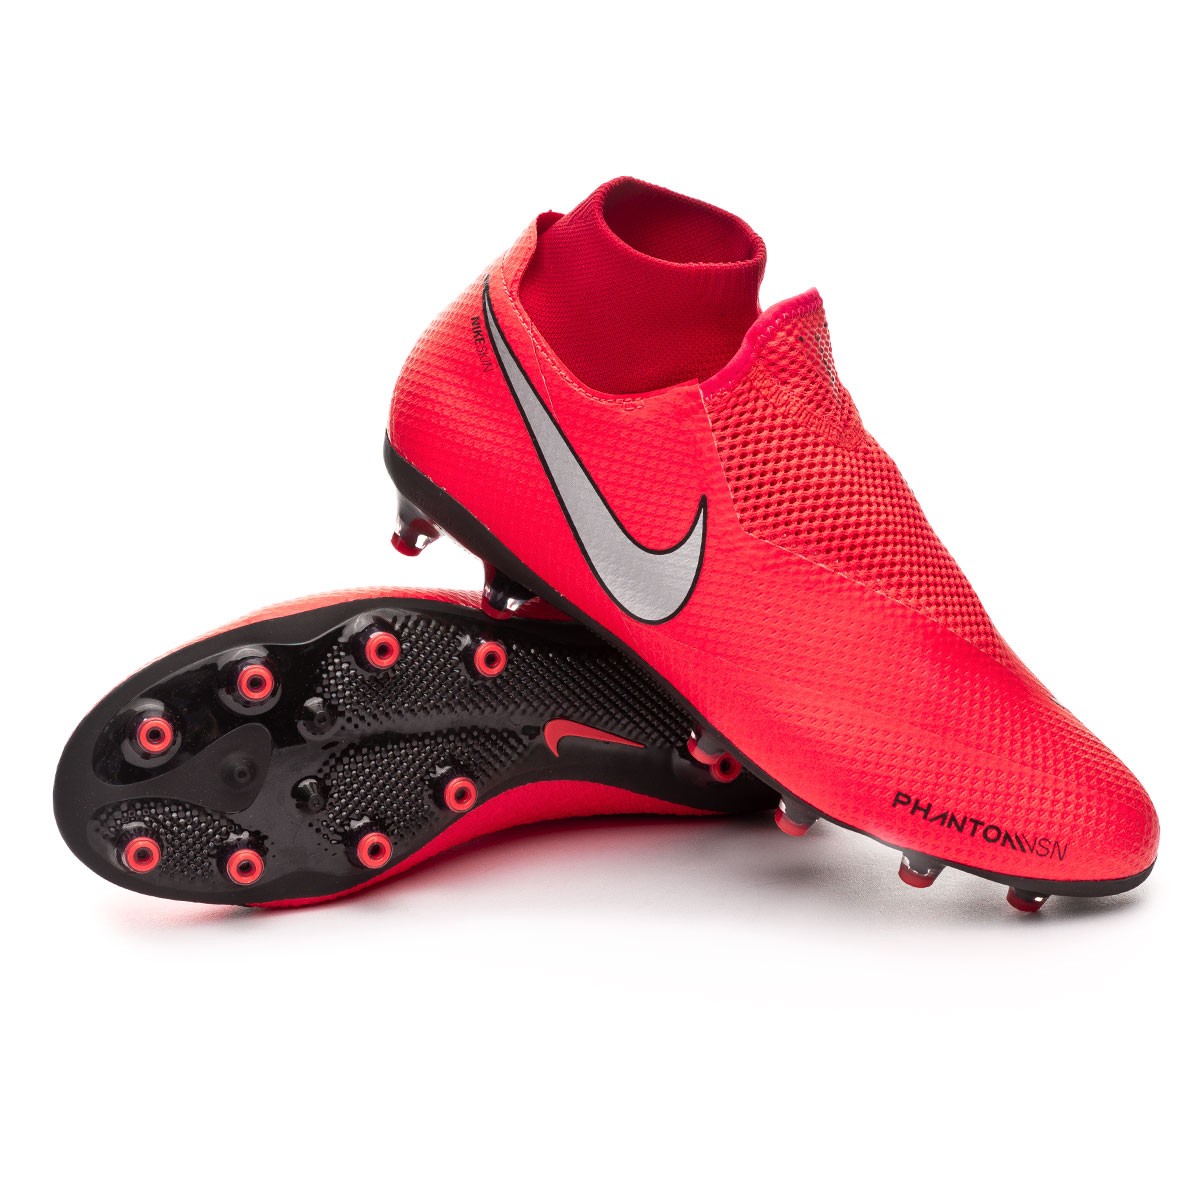 Bota de fútbol Nike Phantom Vision Pro DF AG-Pro Bright crimson-Metallic  silver - Tienda de fútbol Fútbol Emotion